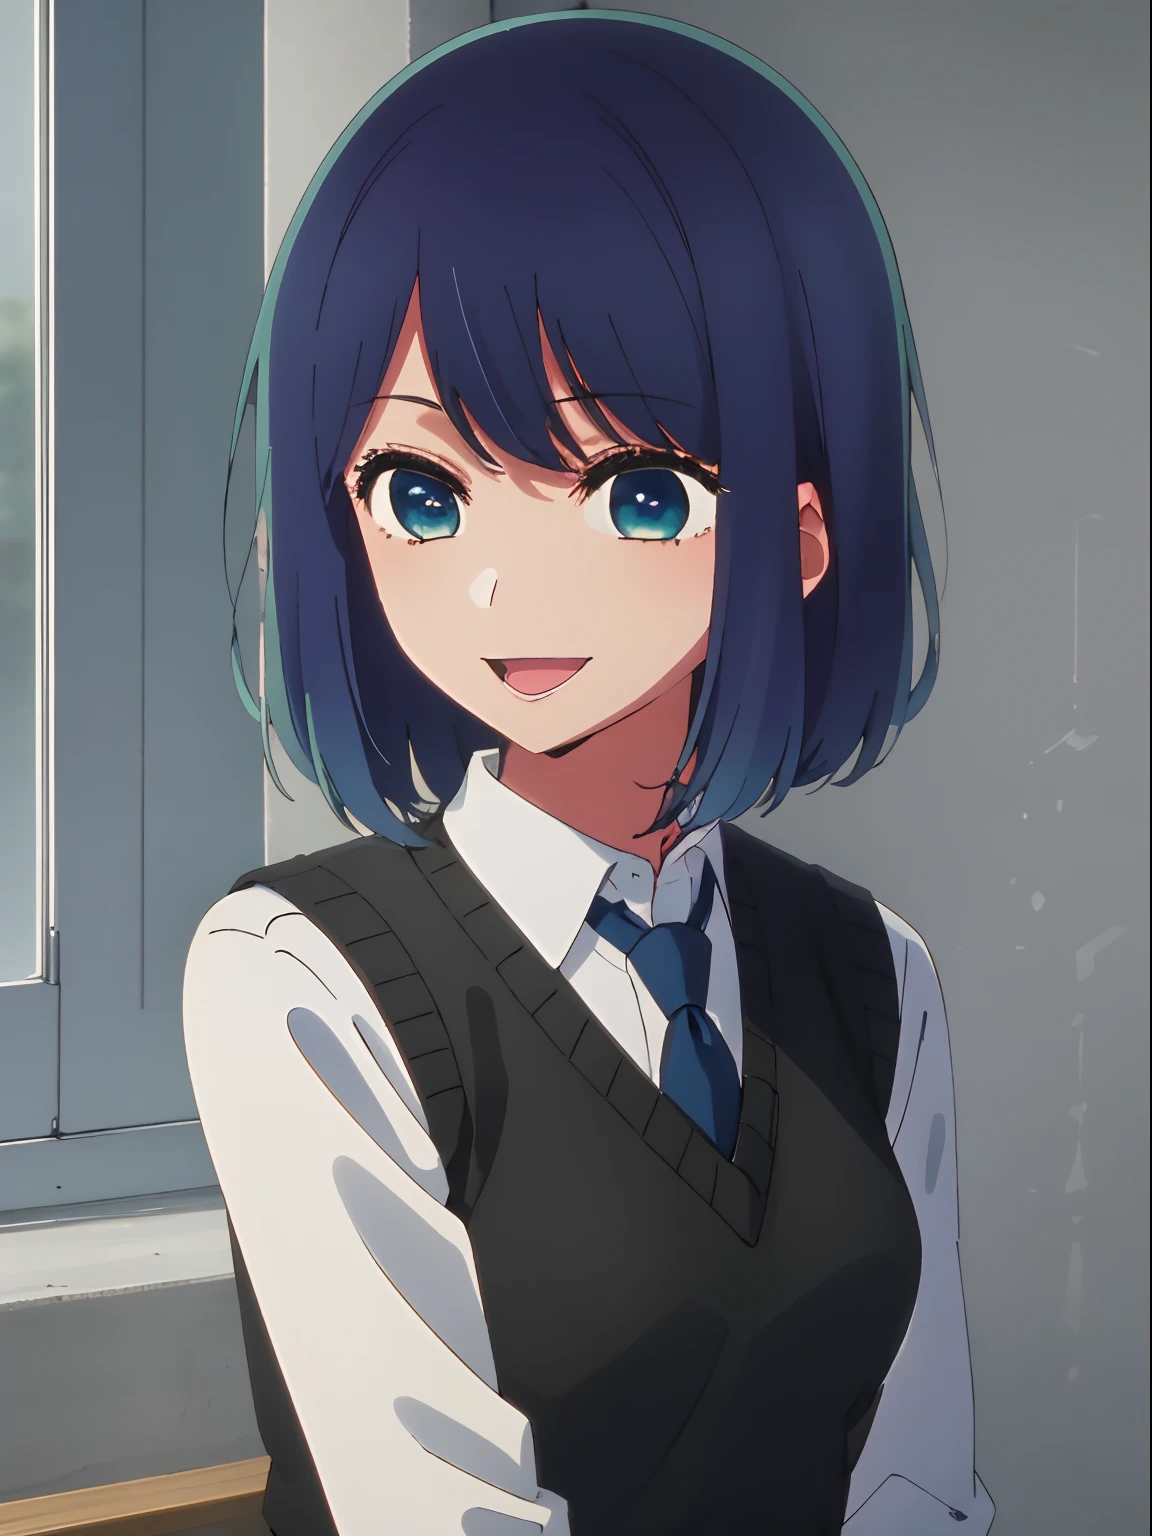 bela iluminação, 1 garota em, só, Akane, camisa branca, Colete suéter, colete preto, gravata azul, ((estilo anime))、((2D))、Um sorriso、Abra sua boca、De frente